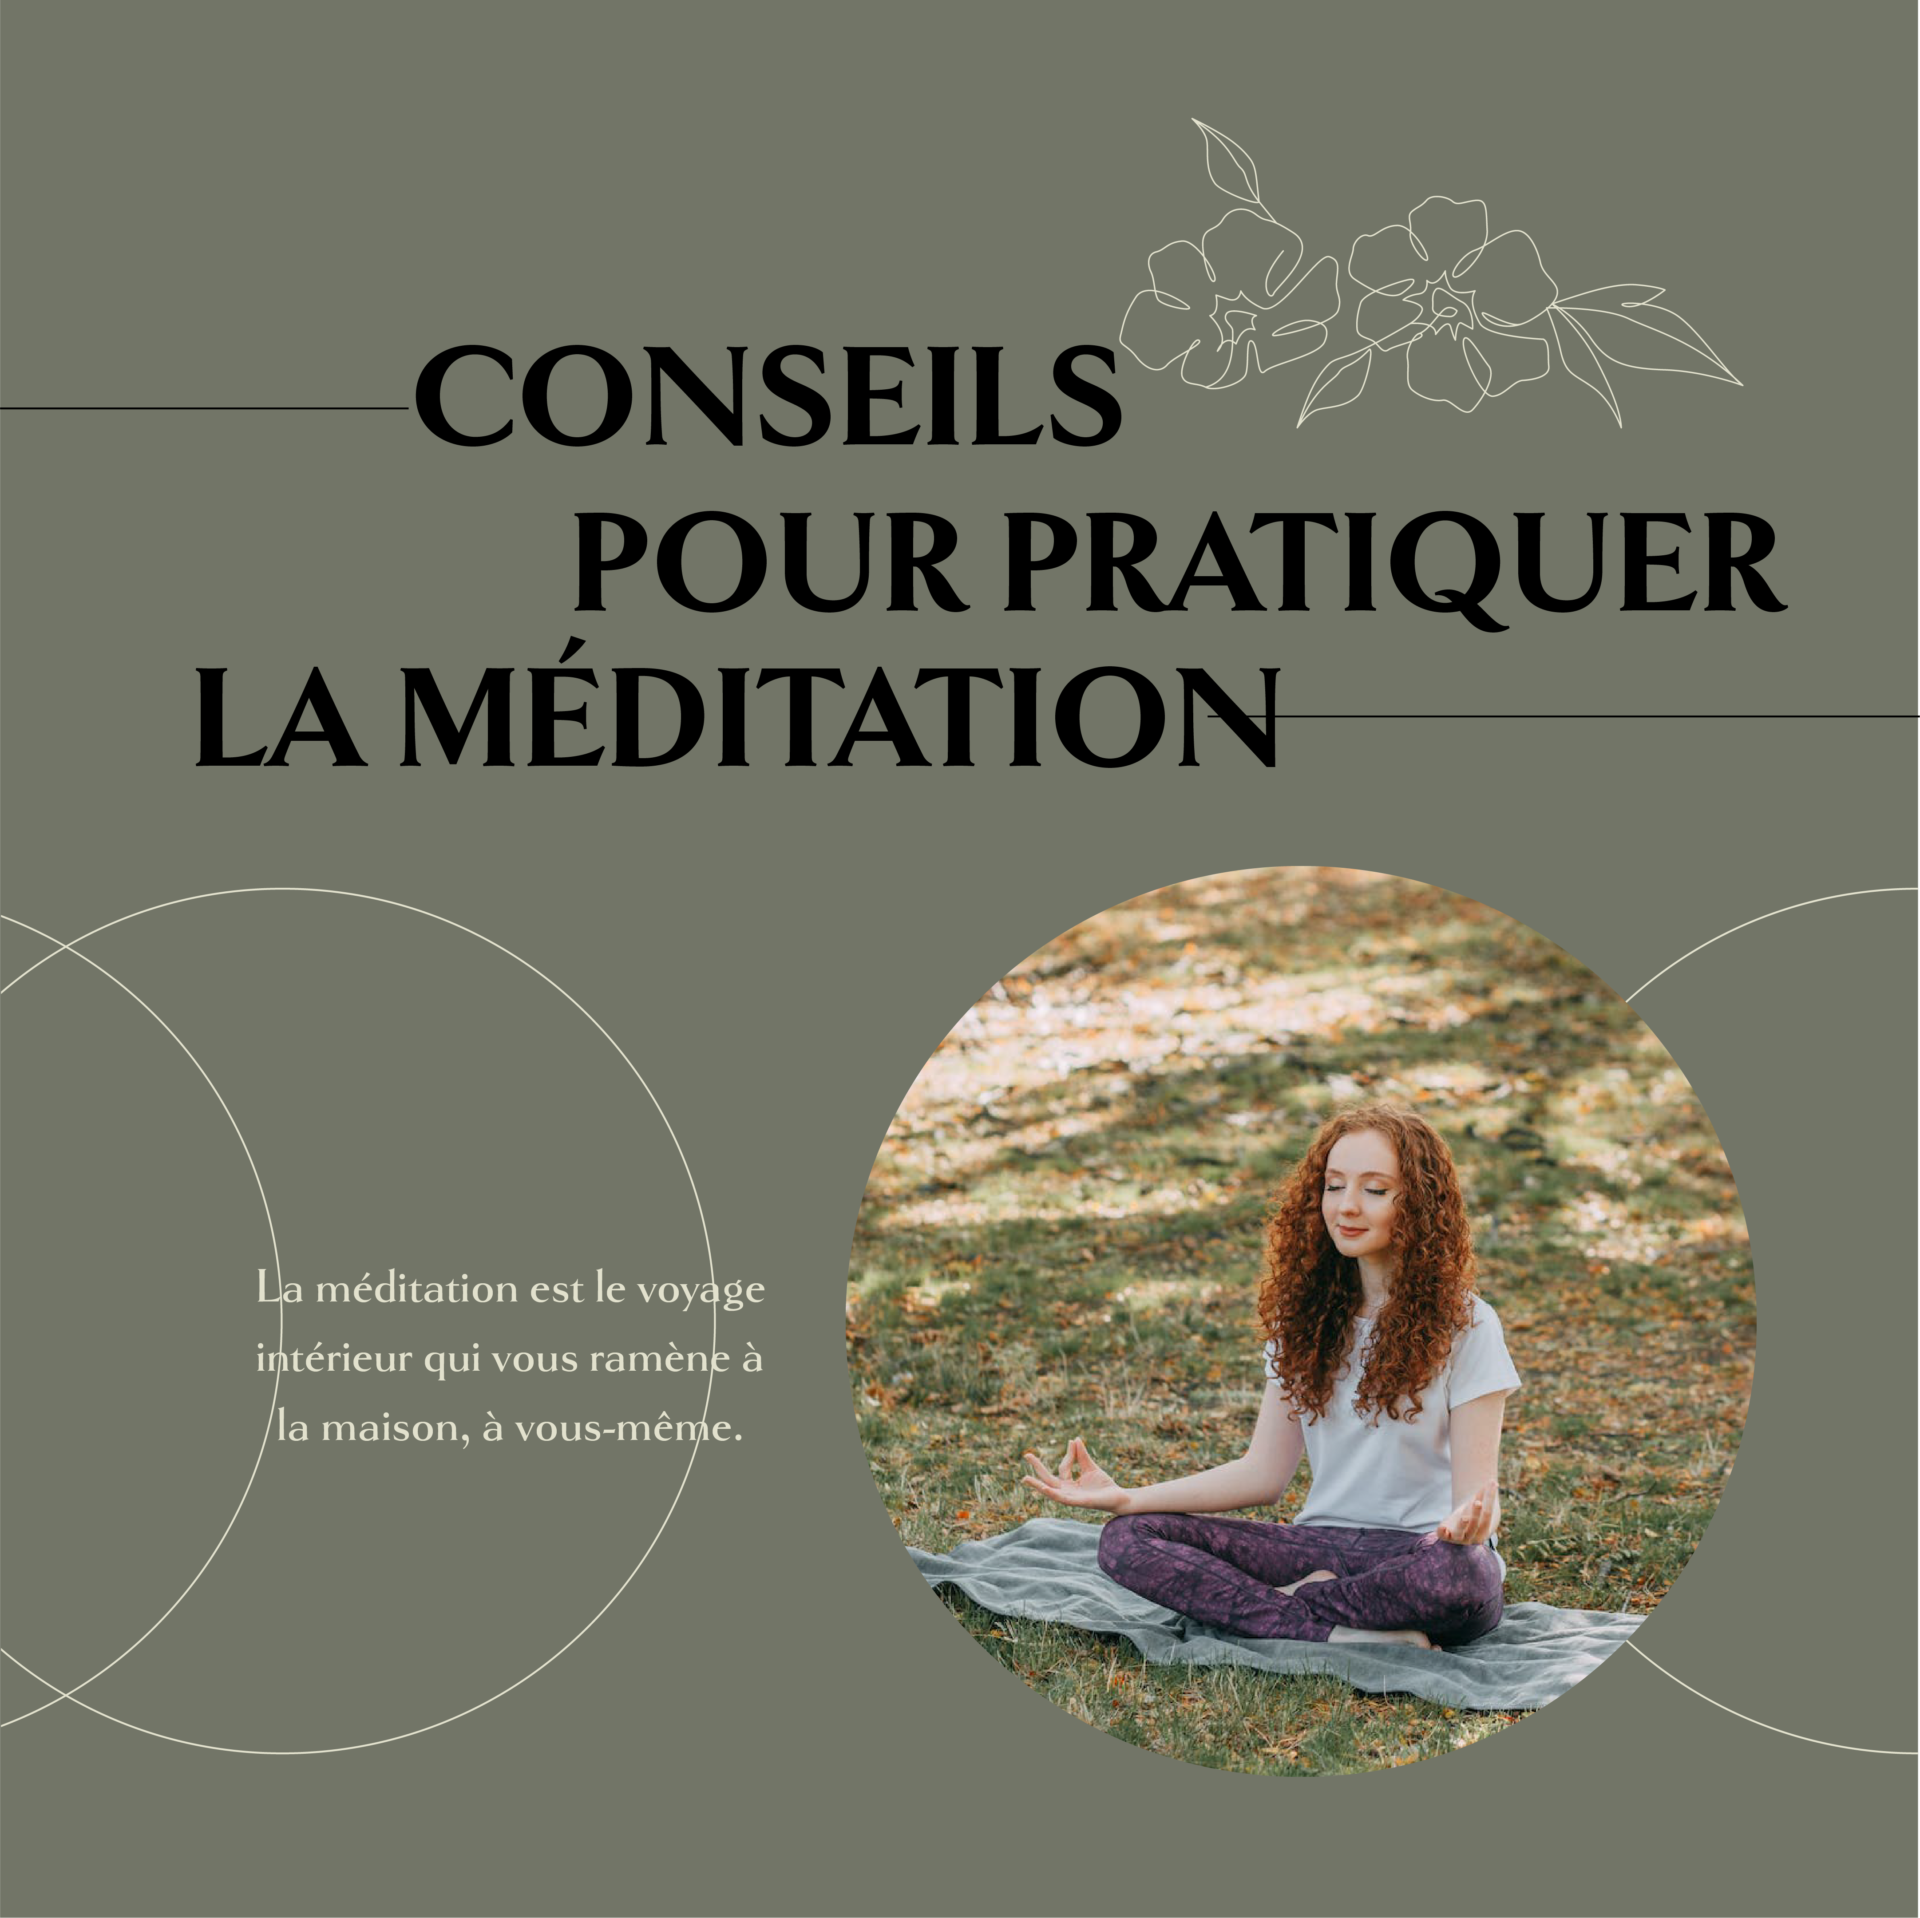 You are currently viewing Conseils pour pratiquer la méditation